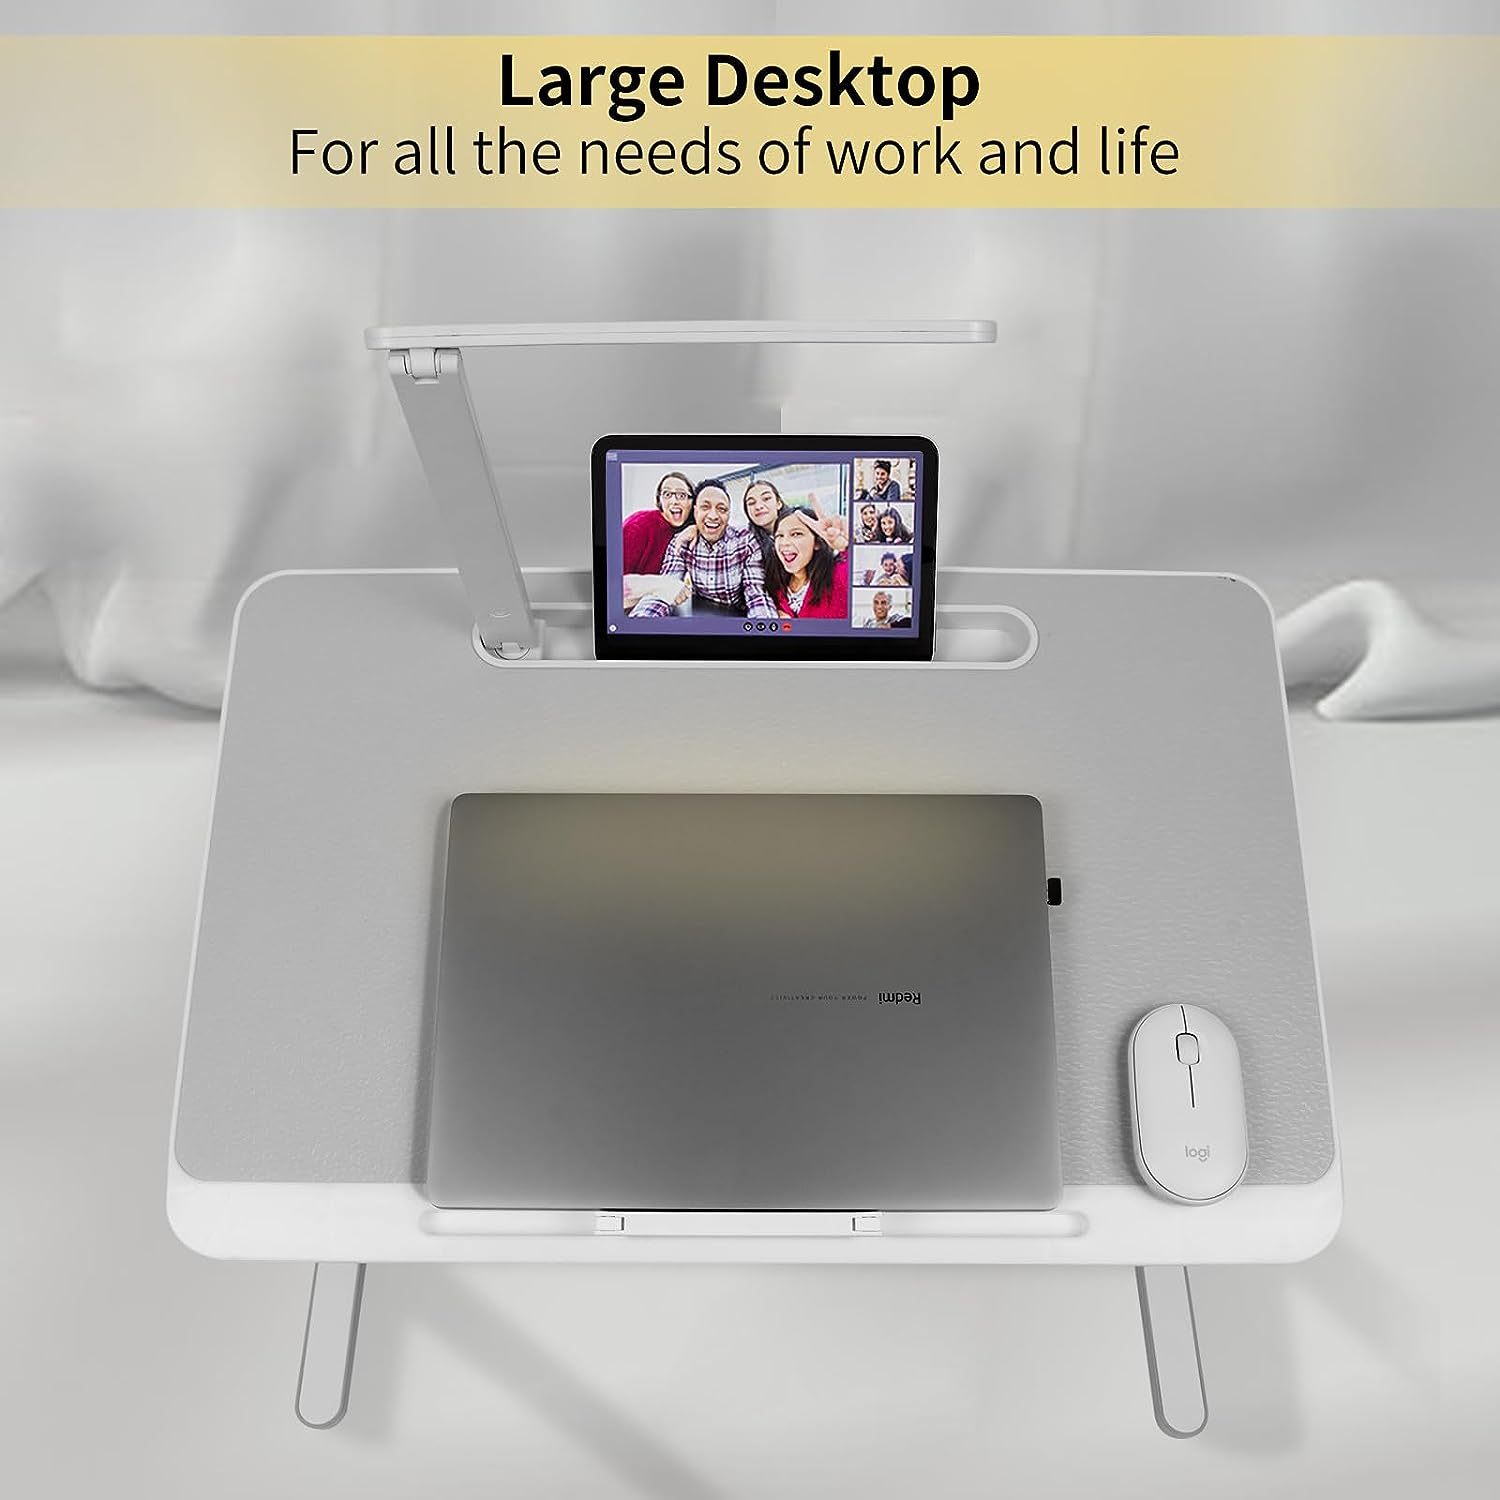 Portable Lap Desk For Laptop